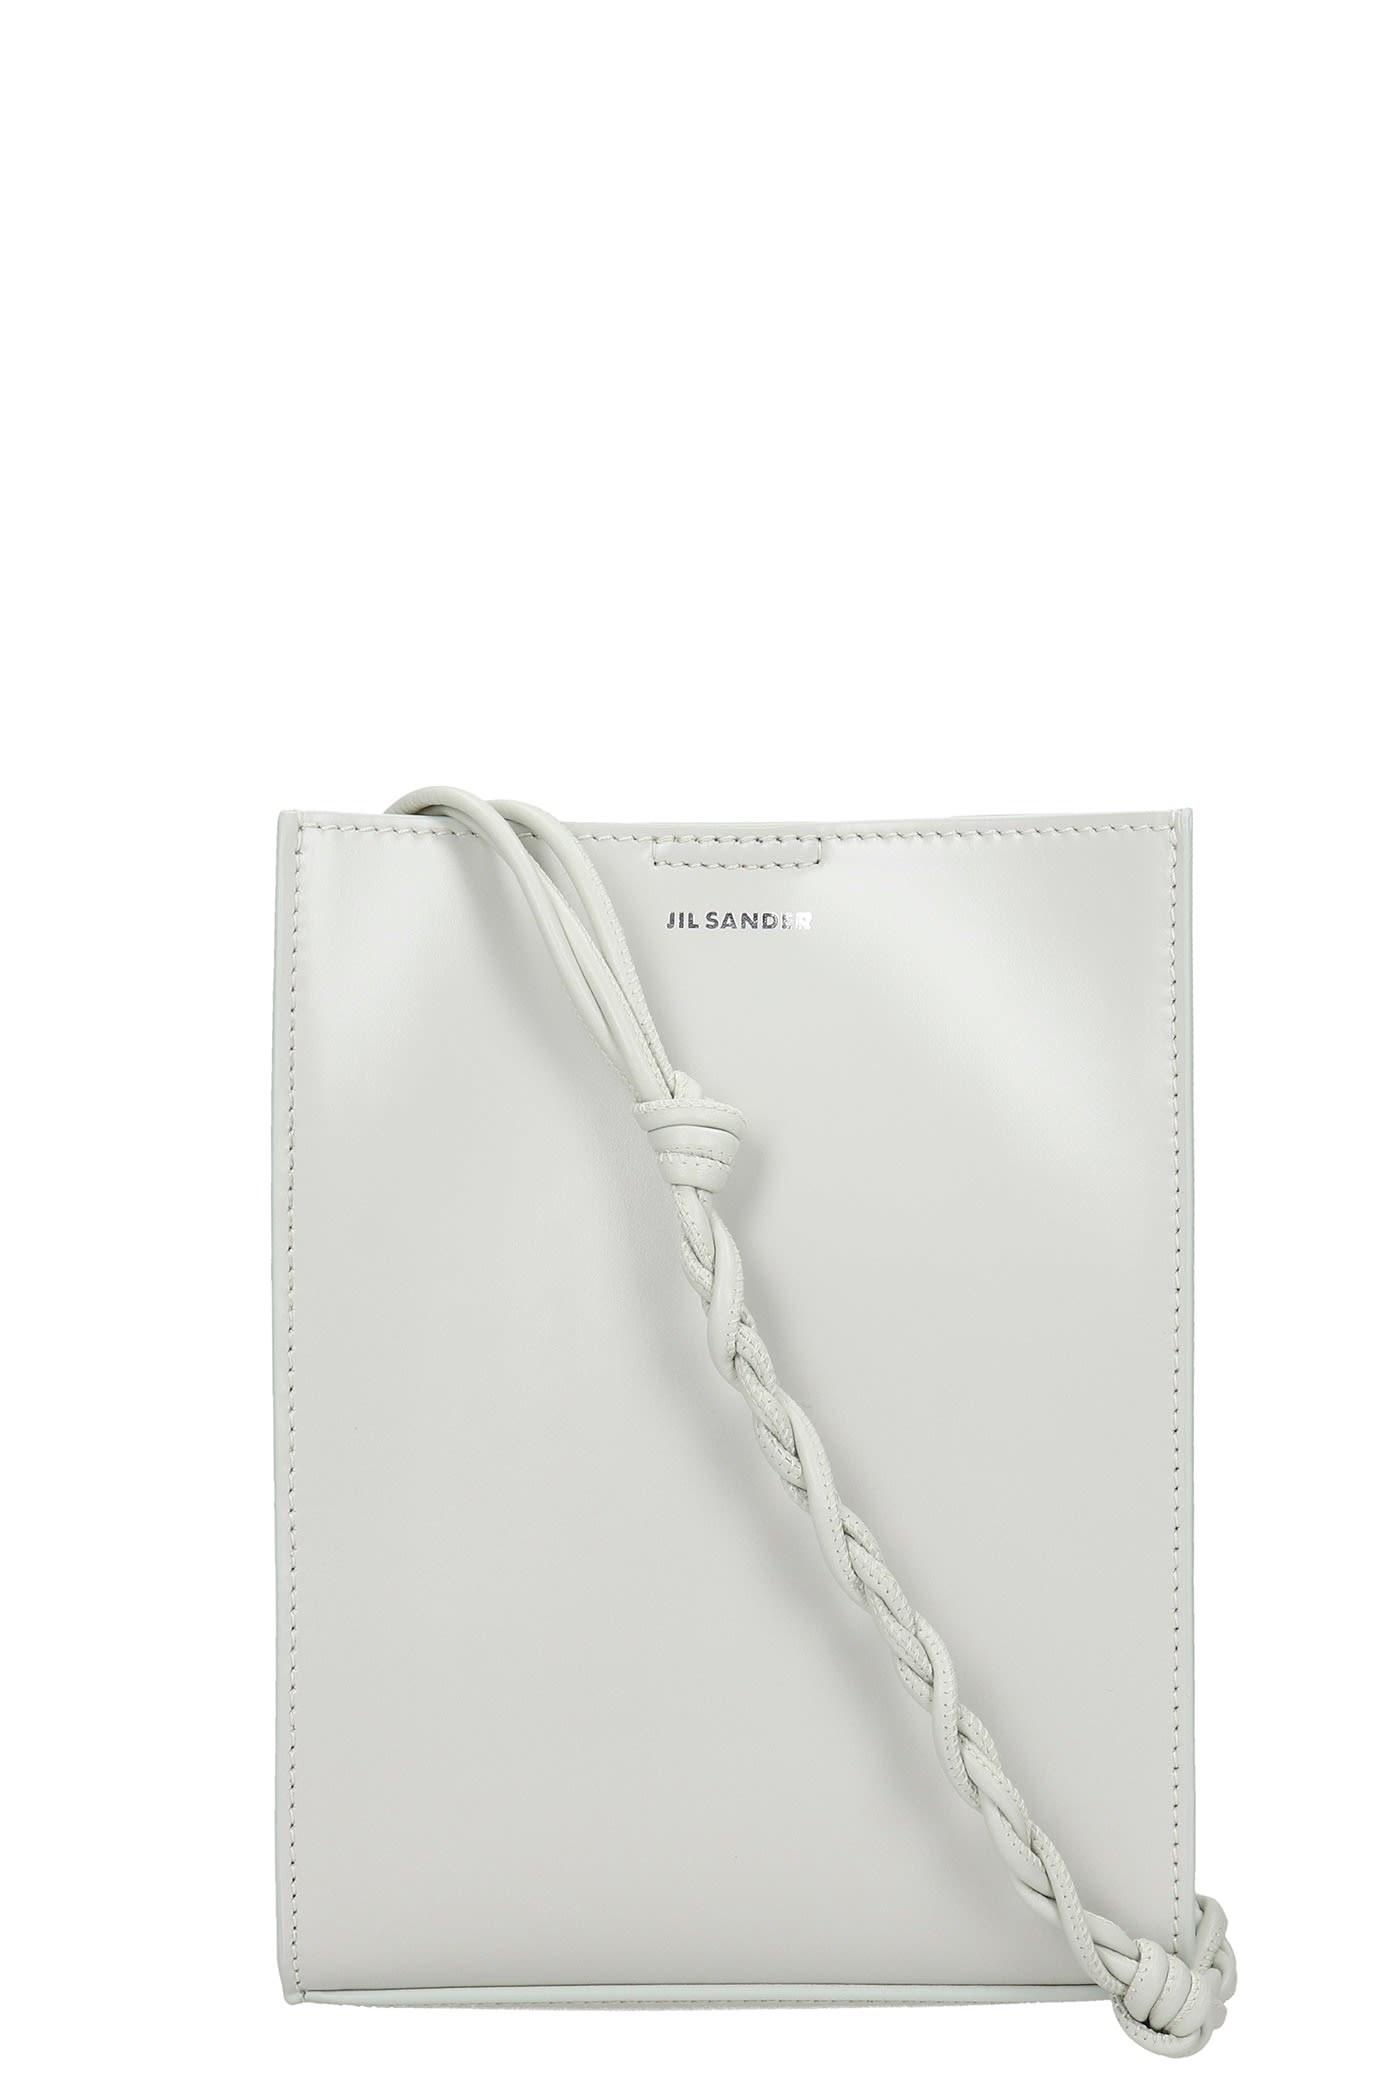 Jil Sander Tangle Shoulder Bag In White Leather